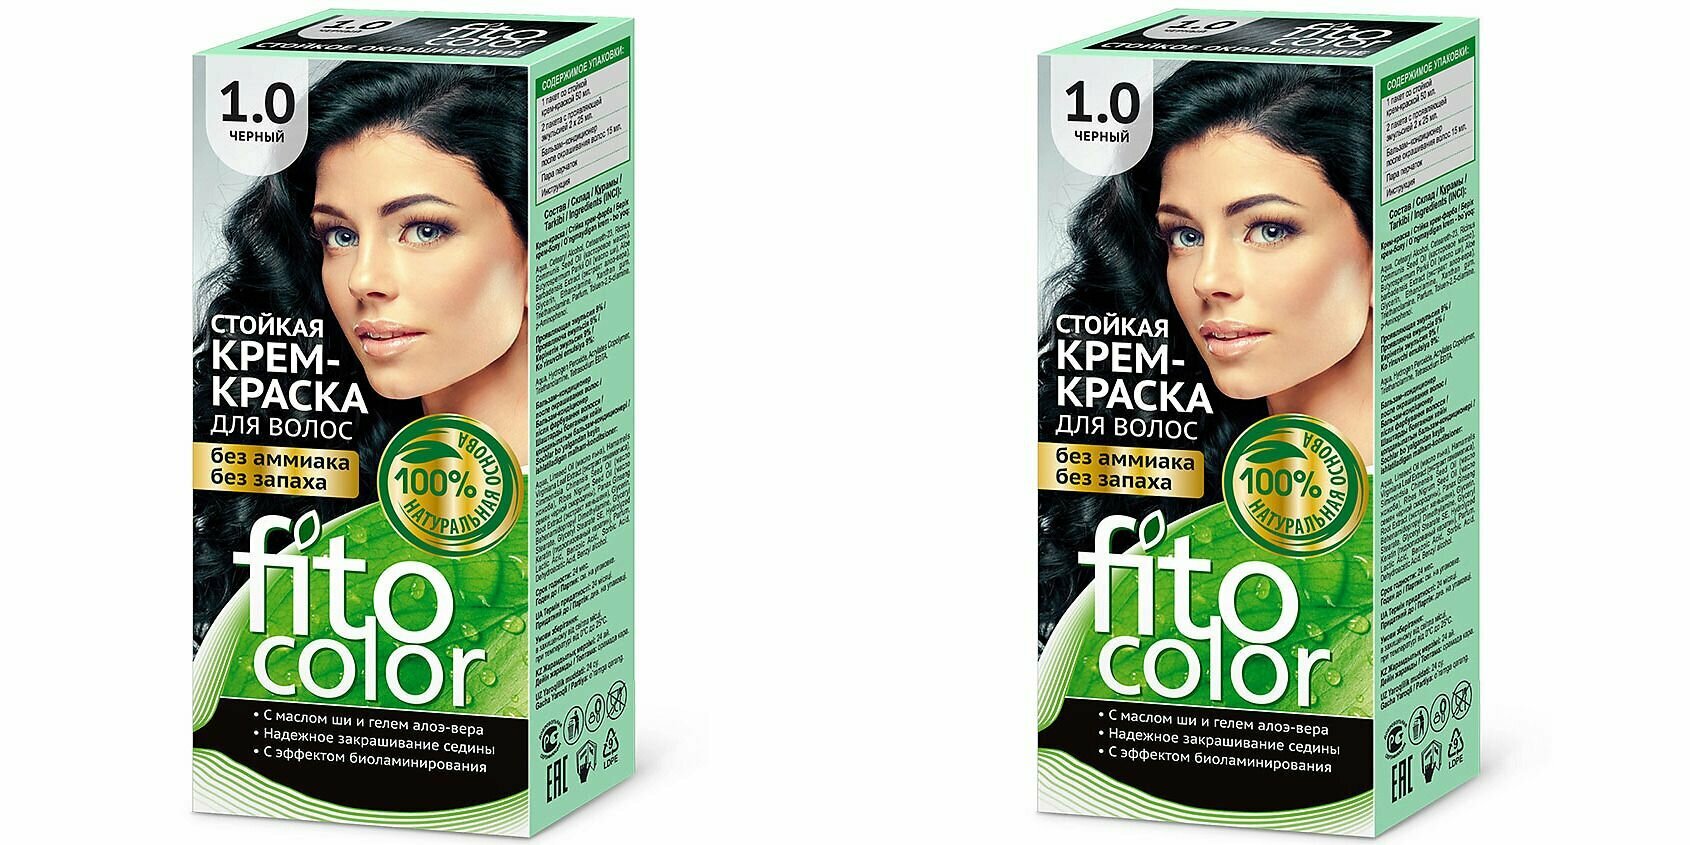 Fito Косметик Стойкая крем-краска для волос серии Fitocolor, тон 1.0, черный, 115 мл, 2 штуки